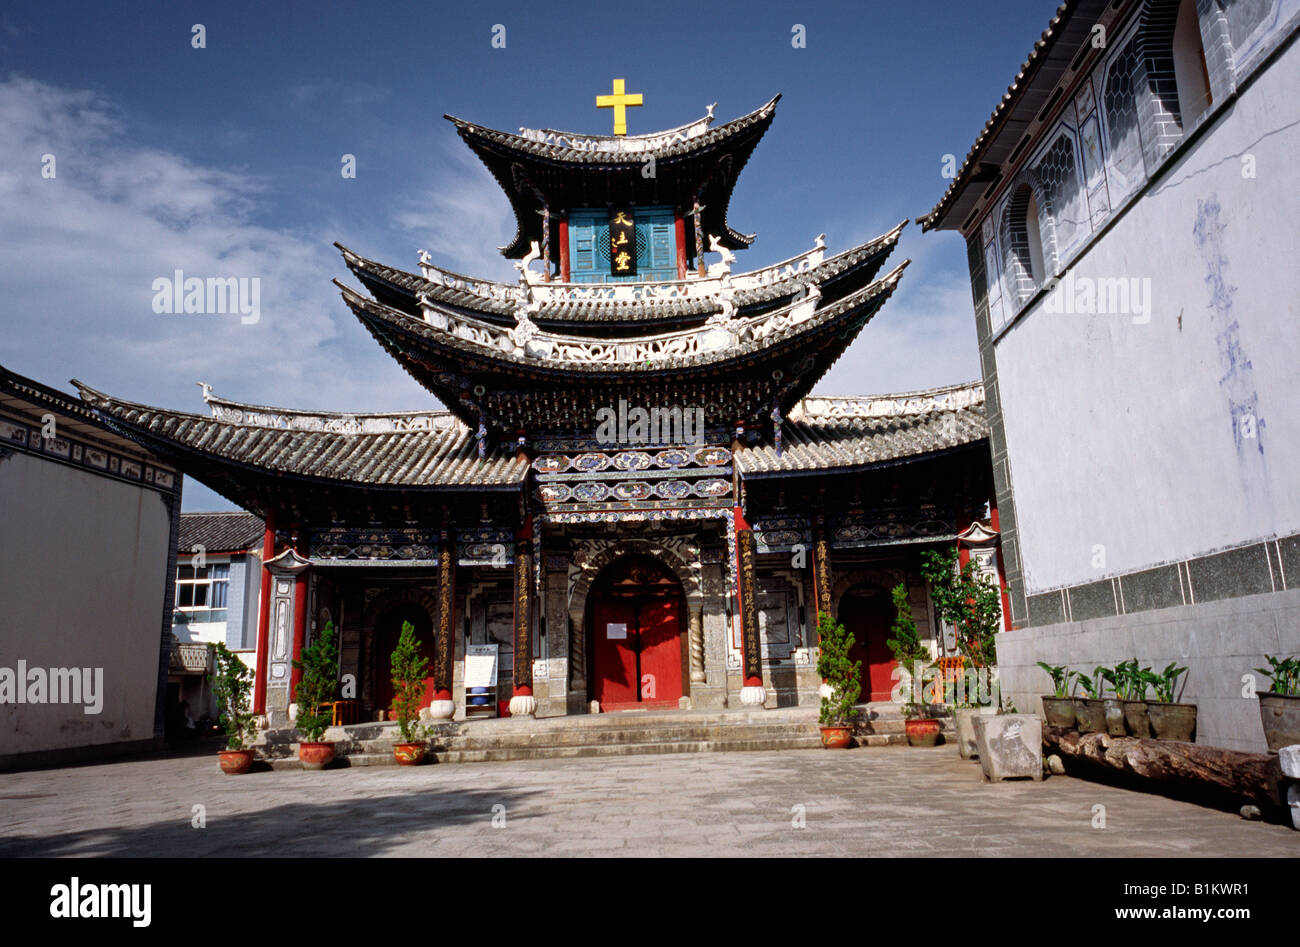 15 ago 2006 - chiesa cristiana costruito come una pagoda a Dali (Città Vecchia) nella provincia cinese dello Yunnan. Foto Stock